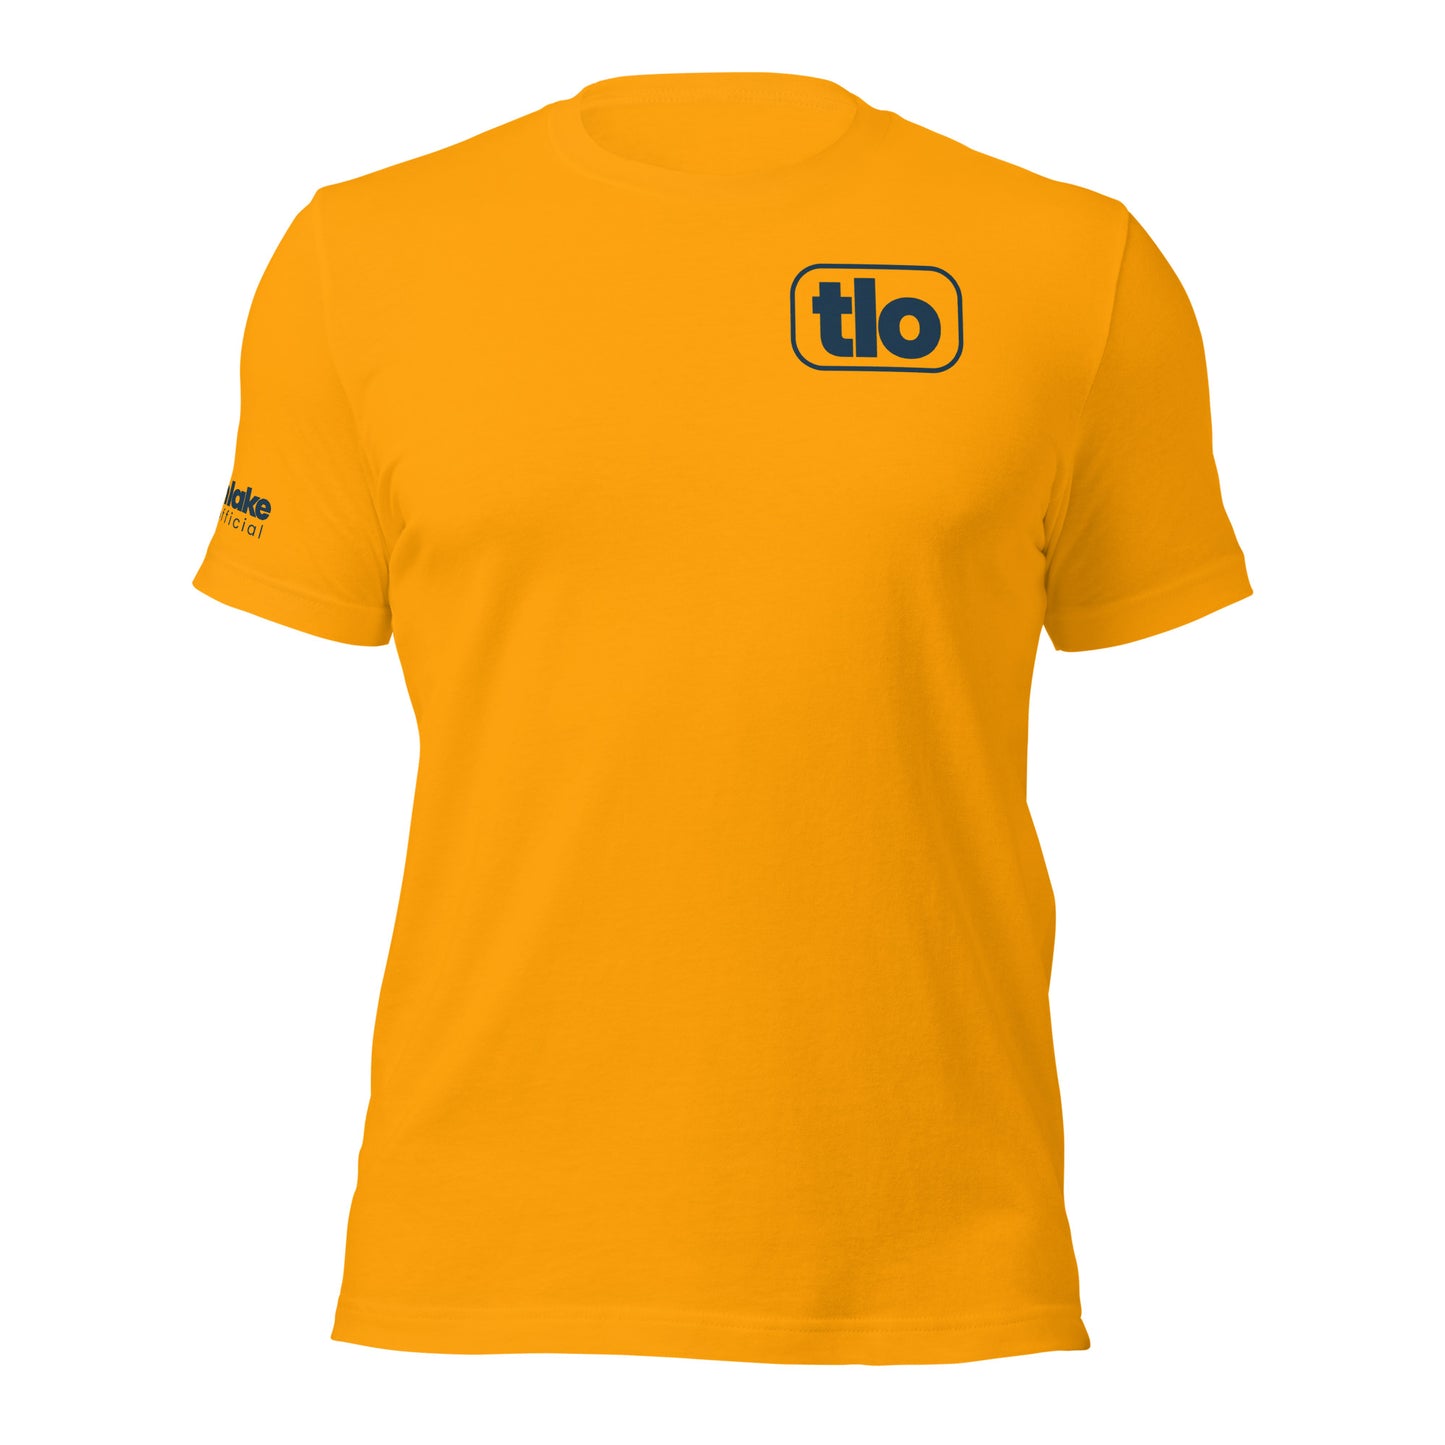 TLO Badge Unisex t-shirt